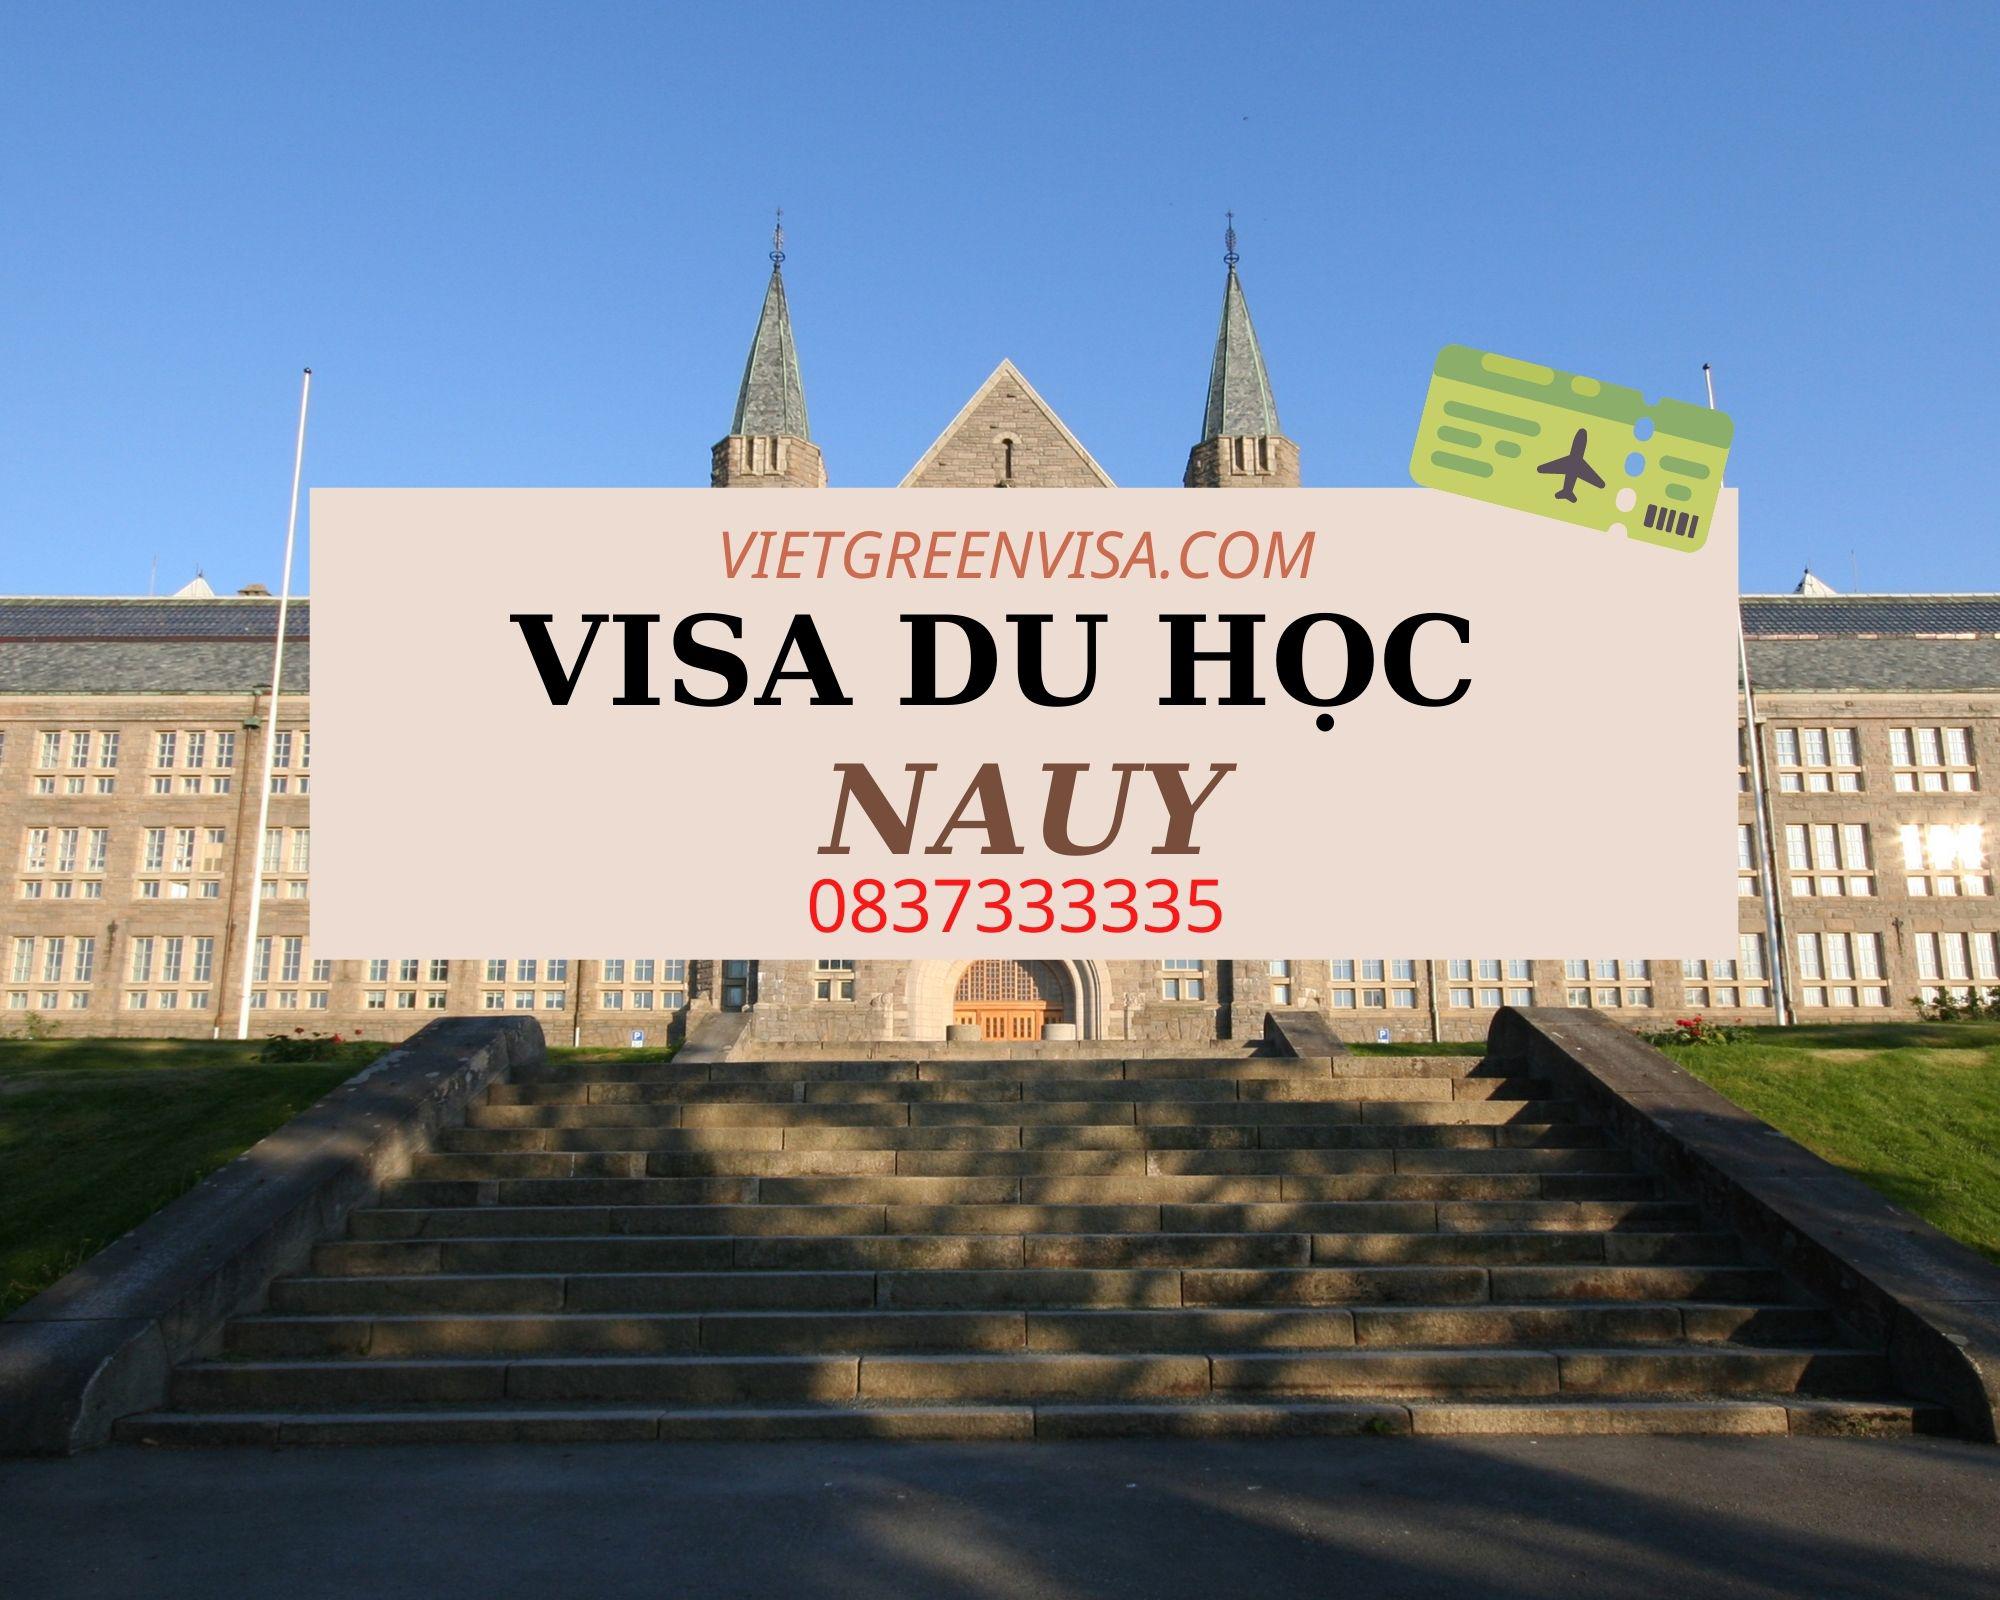 Dịch vụ xin visa đi du học ở Nauy nhanh chóng